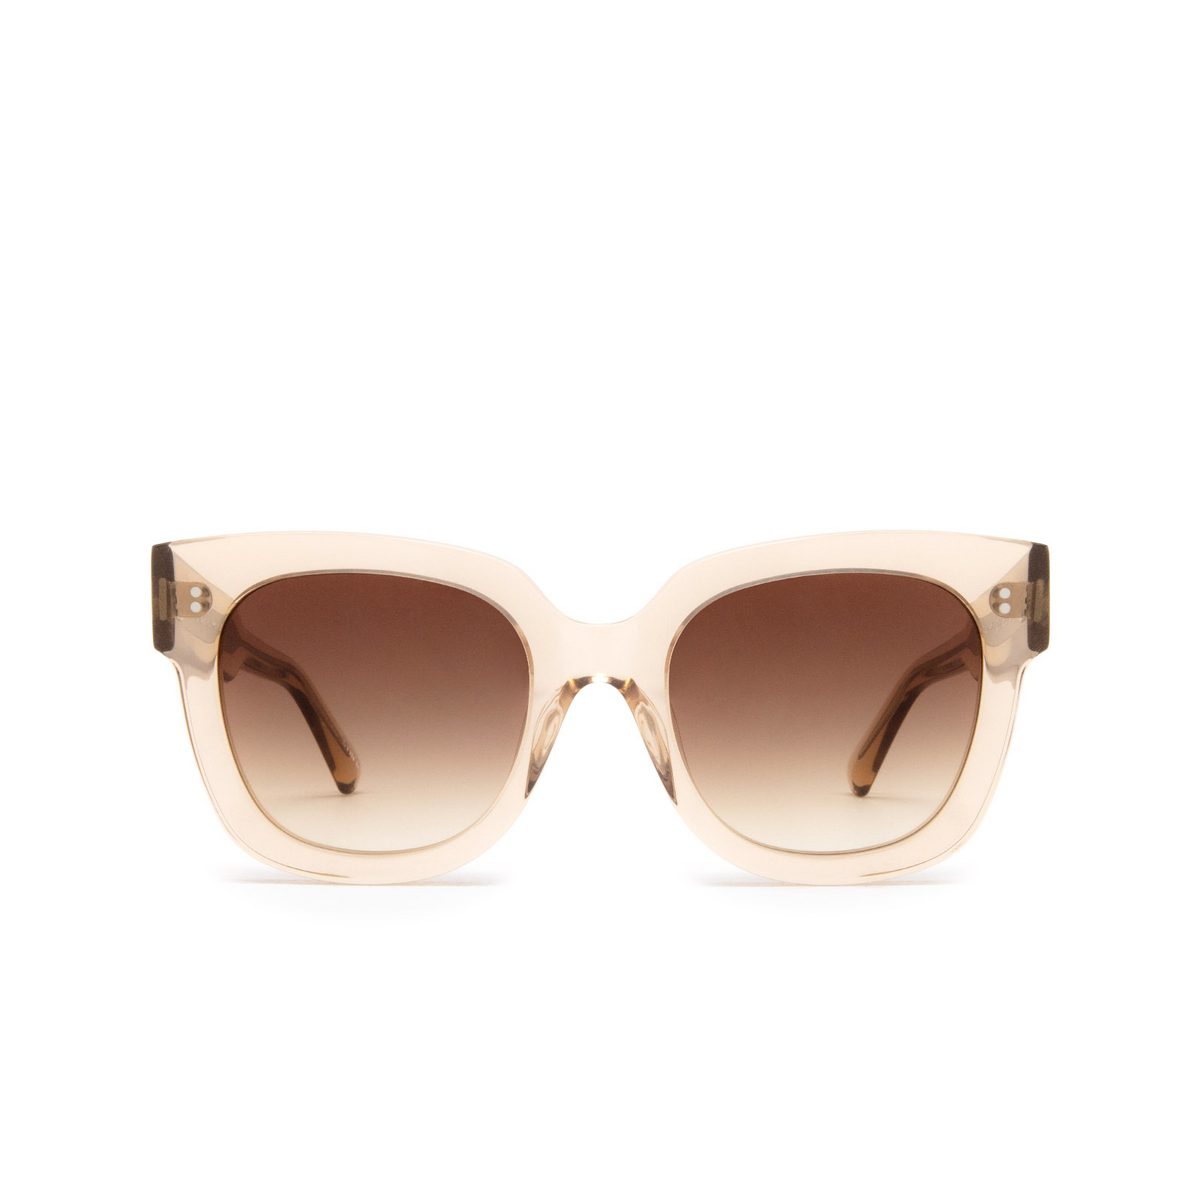 Chimi® Square Sunglasses: 08 color Ecru - front view